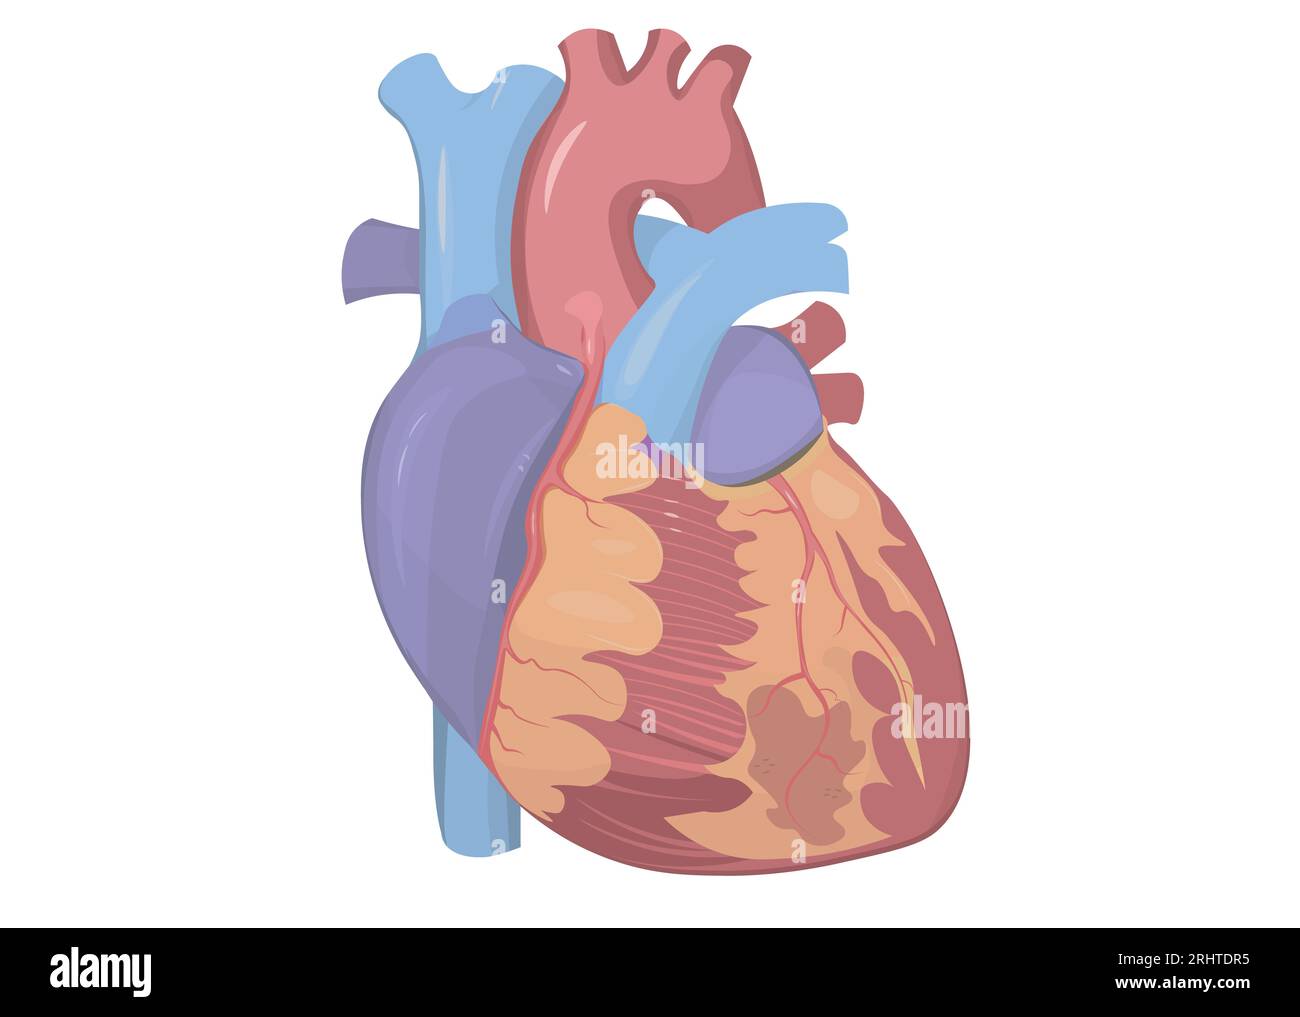 Human heart, illustration Stock Photo